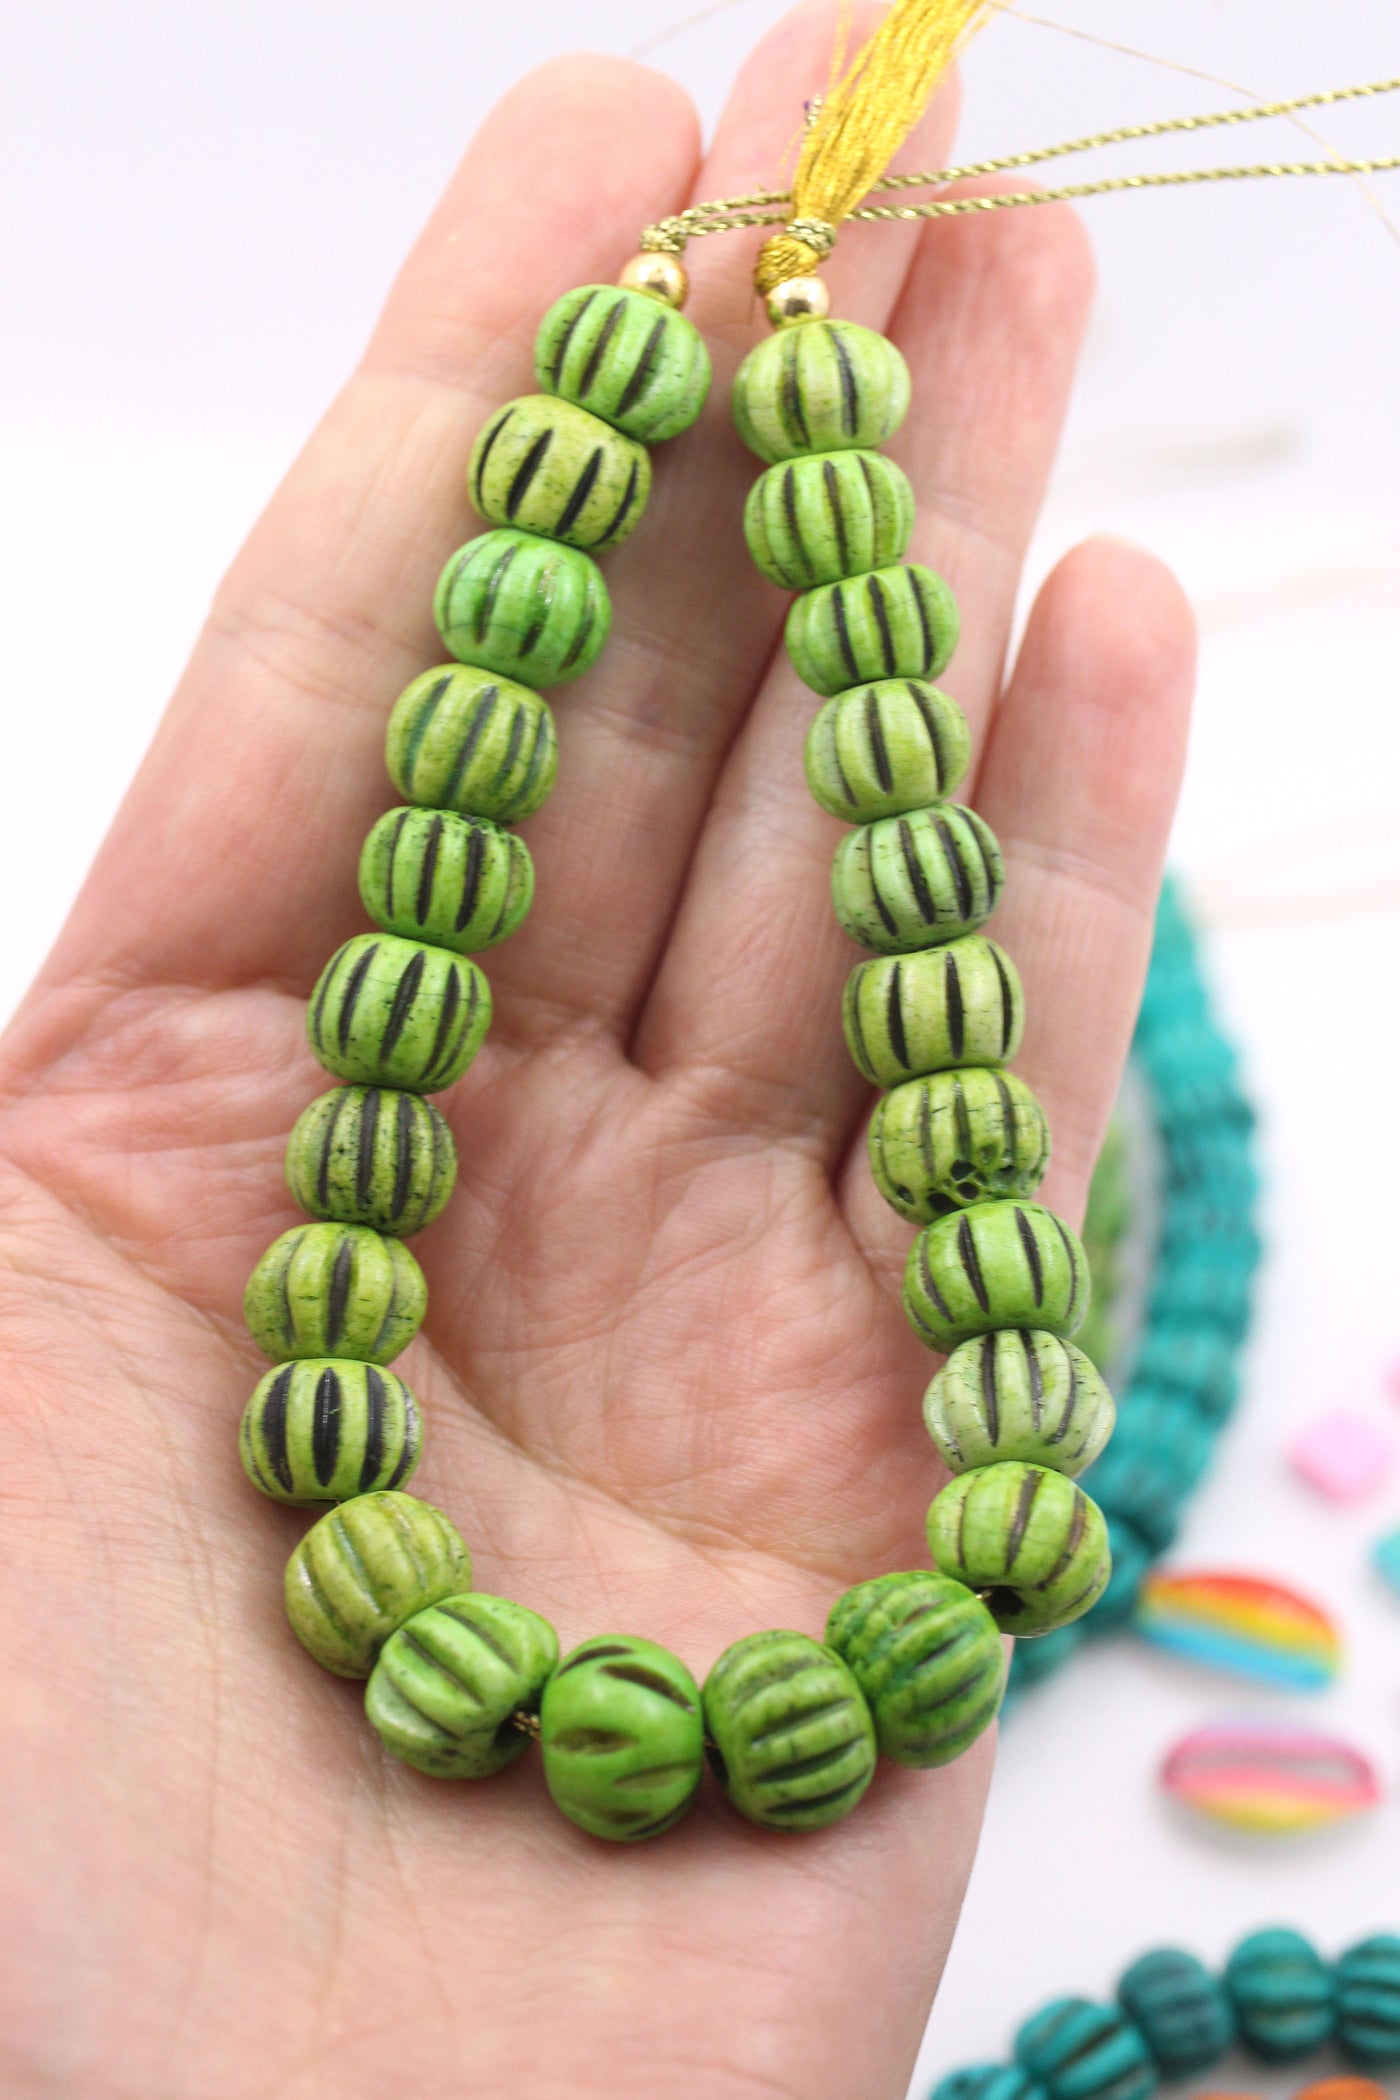 Green beads for bracelets